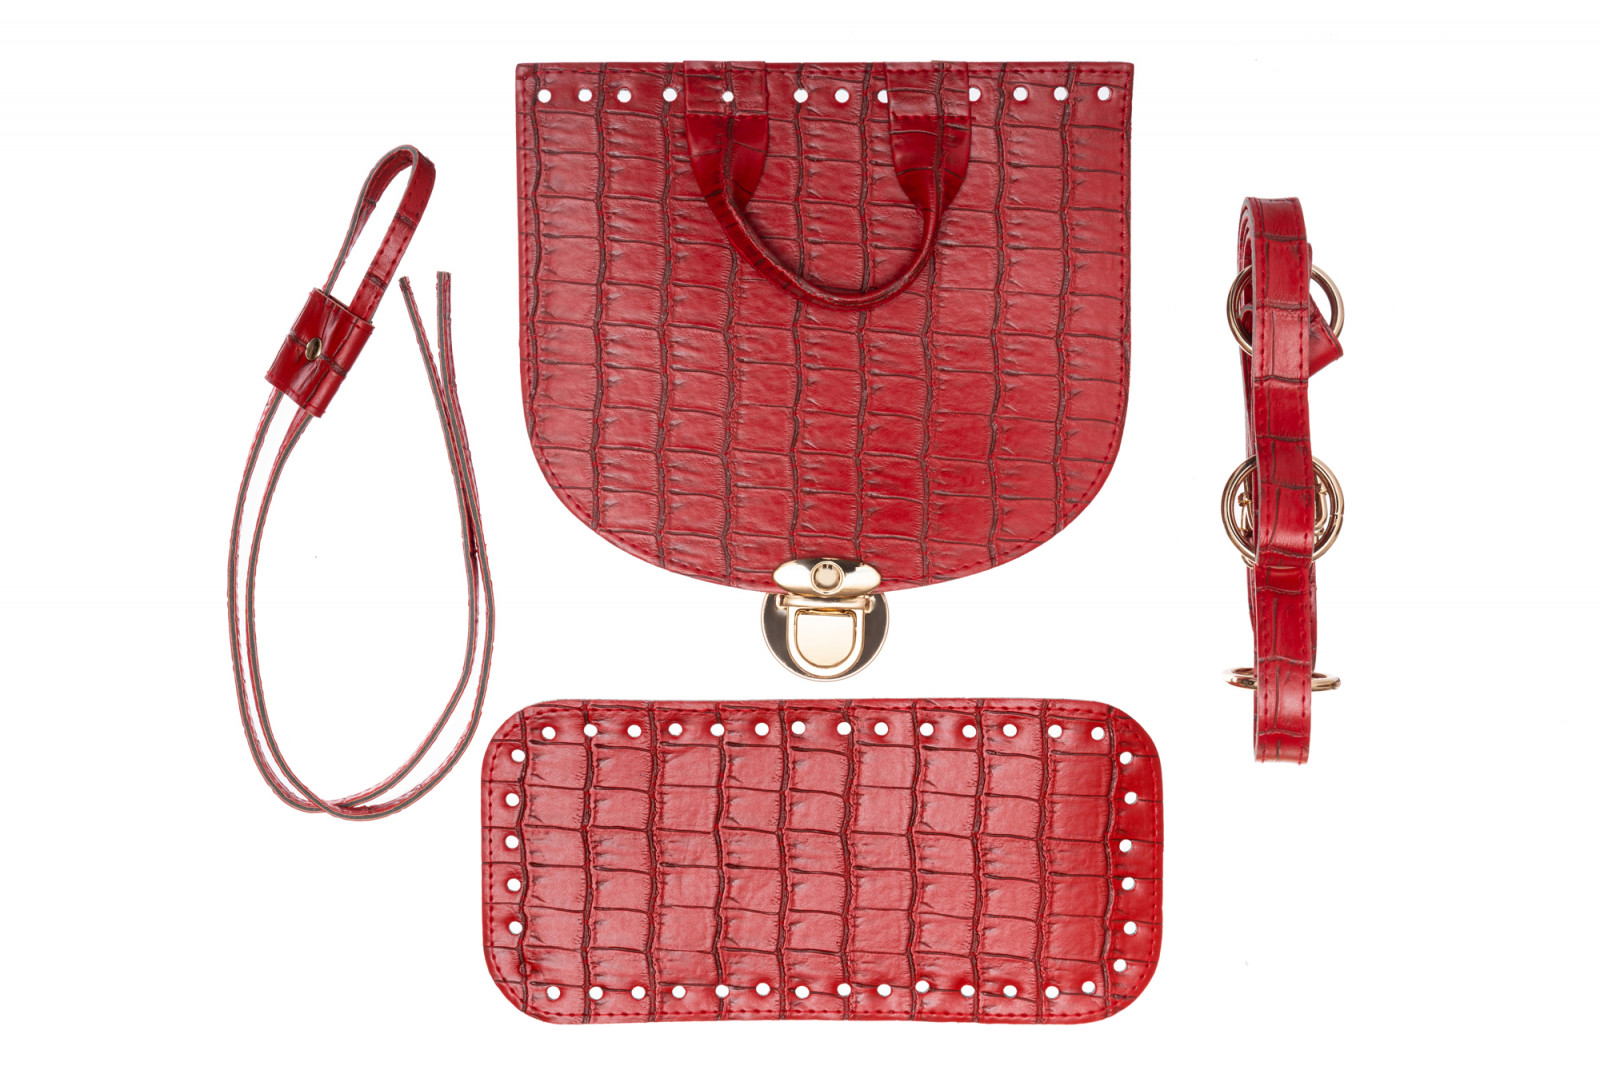 Набор для рюкзака из экокожи Крокодил, цвет Красный (5 позиций) фурнитура цвета золото 73208 ТрК